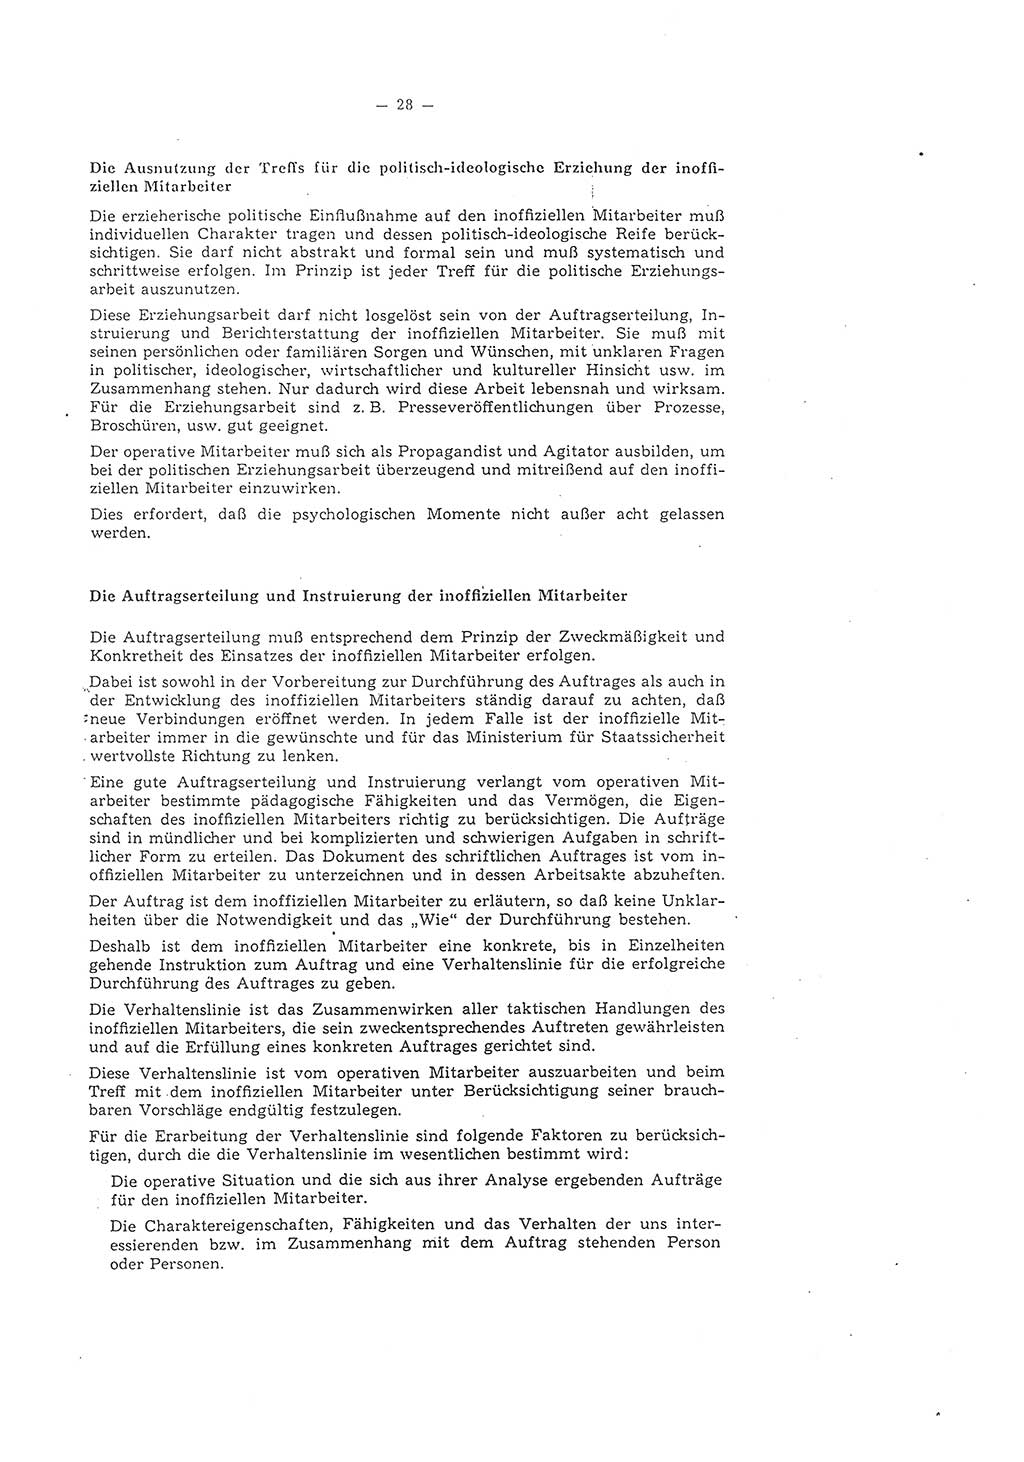 Richtlinie 1/58 für die Arbeit mit inoffiziellen Mitarbeitern im Gebiet der Deutschen Demokratischen Republik (DDR), Ministerium für Staatssicherheit (MfS), Der Minister (Mielke), Geheime Verschlußsache (GVS) 1336/58, Berlin 1958, Seite 28 (RL 1/58 DDR MfS Min. GVS 1336/58 1958, S. 28)